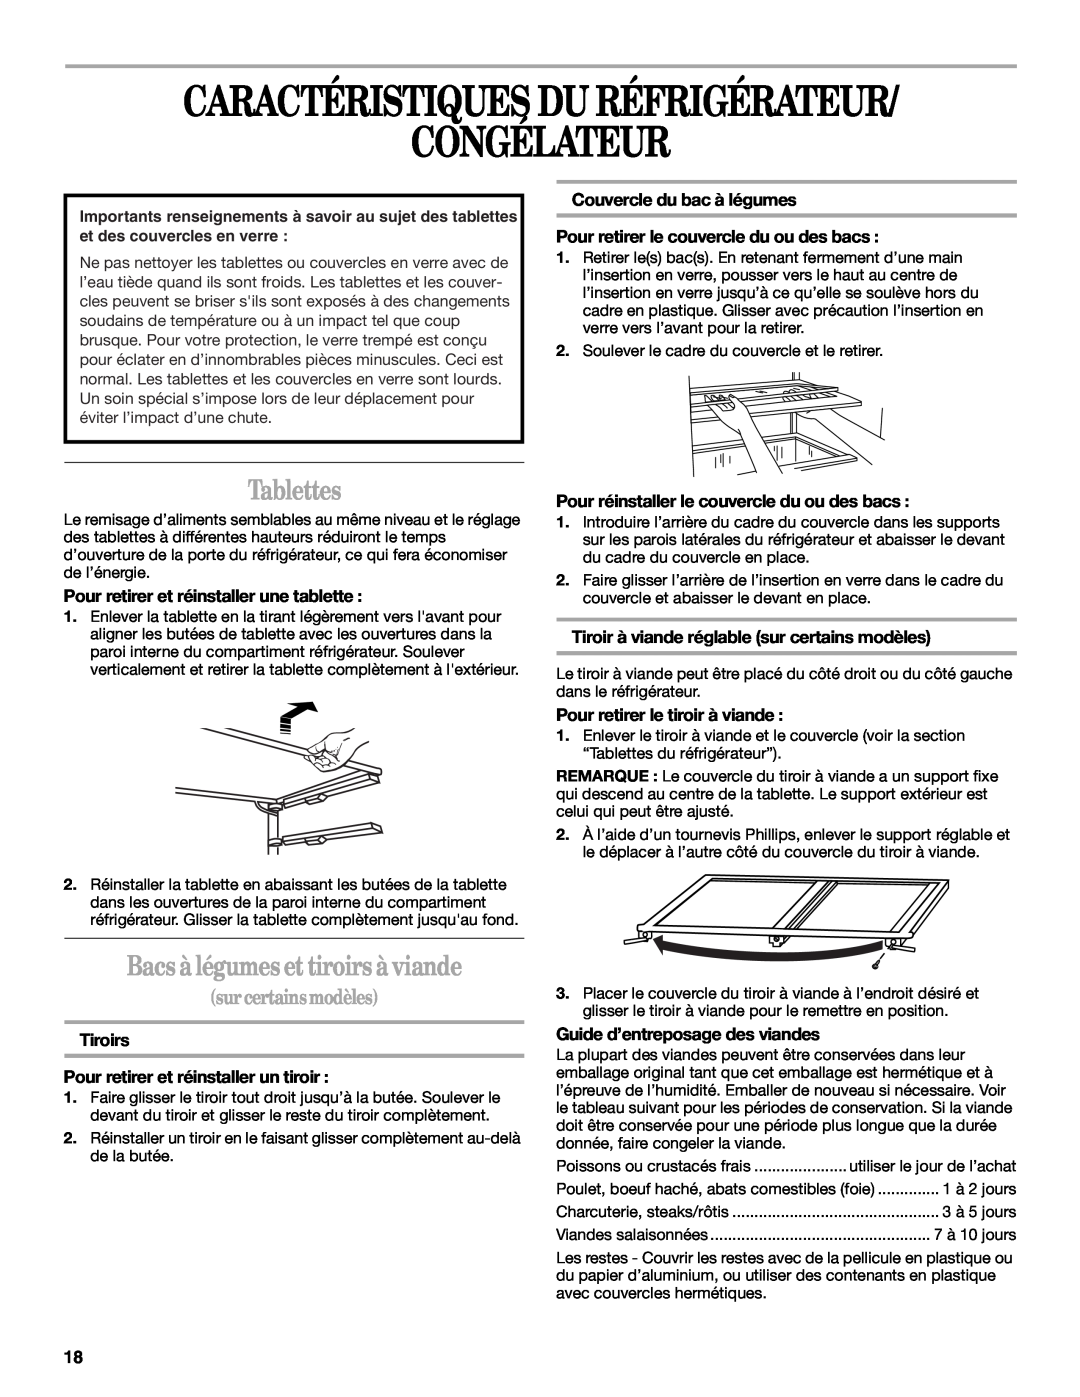 Whirlpool EL7JWKLMQ00 manual Caractéristiques Du Réfrigérateur Congélateur, Tablettes, Bacs àlégumes et tiroirs àviande 